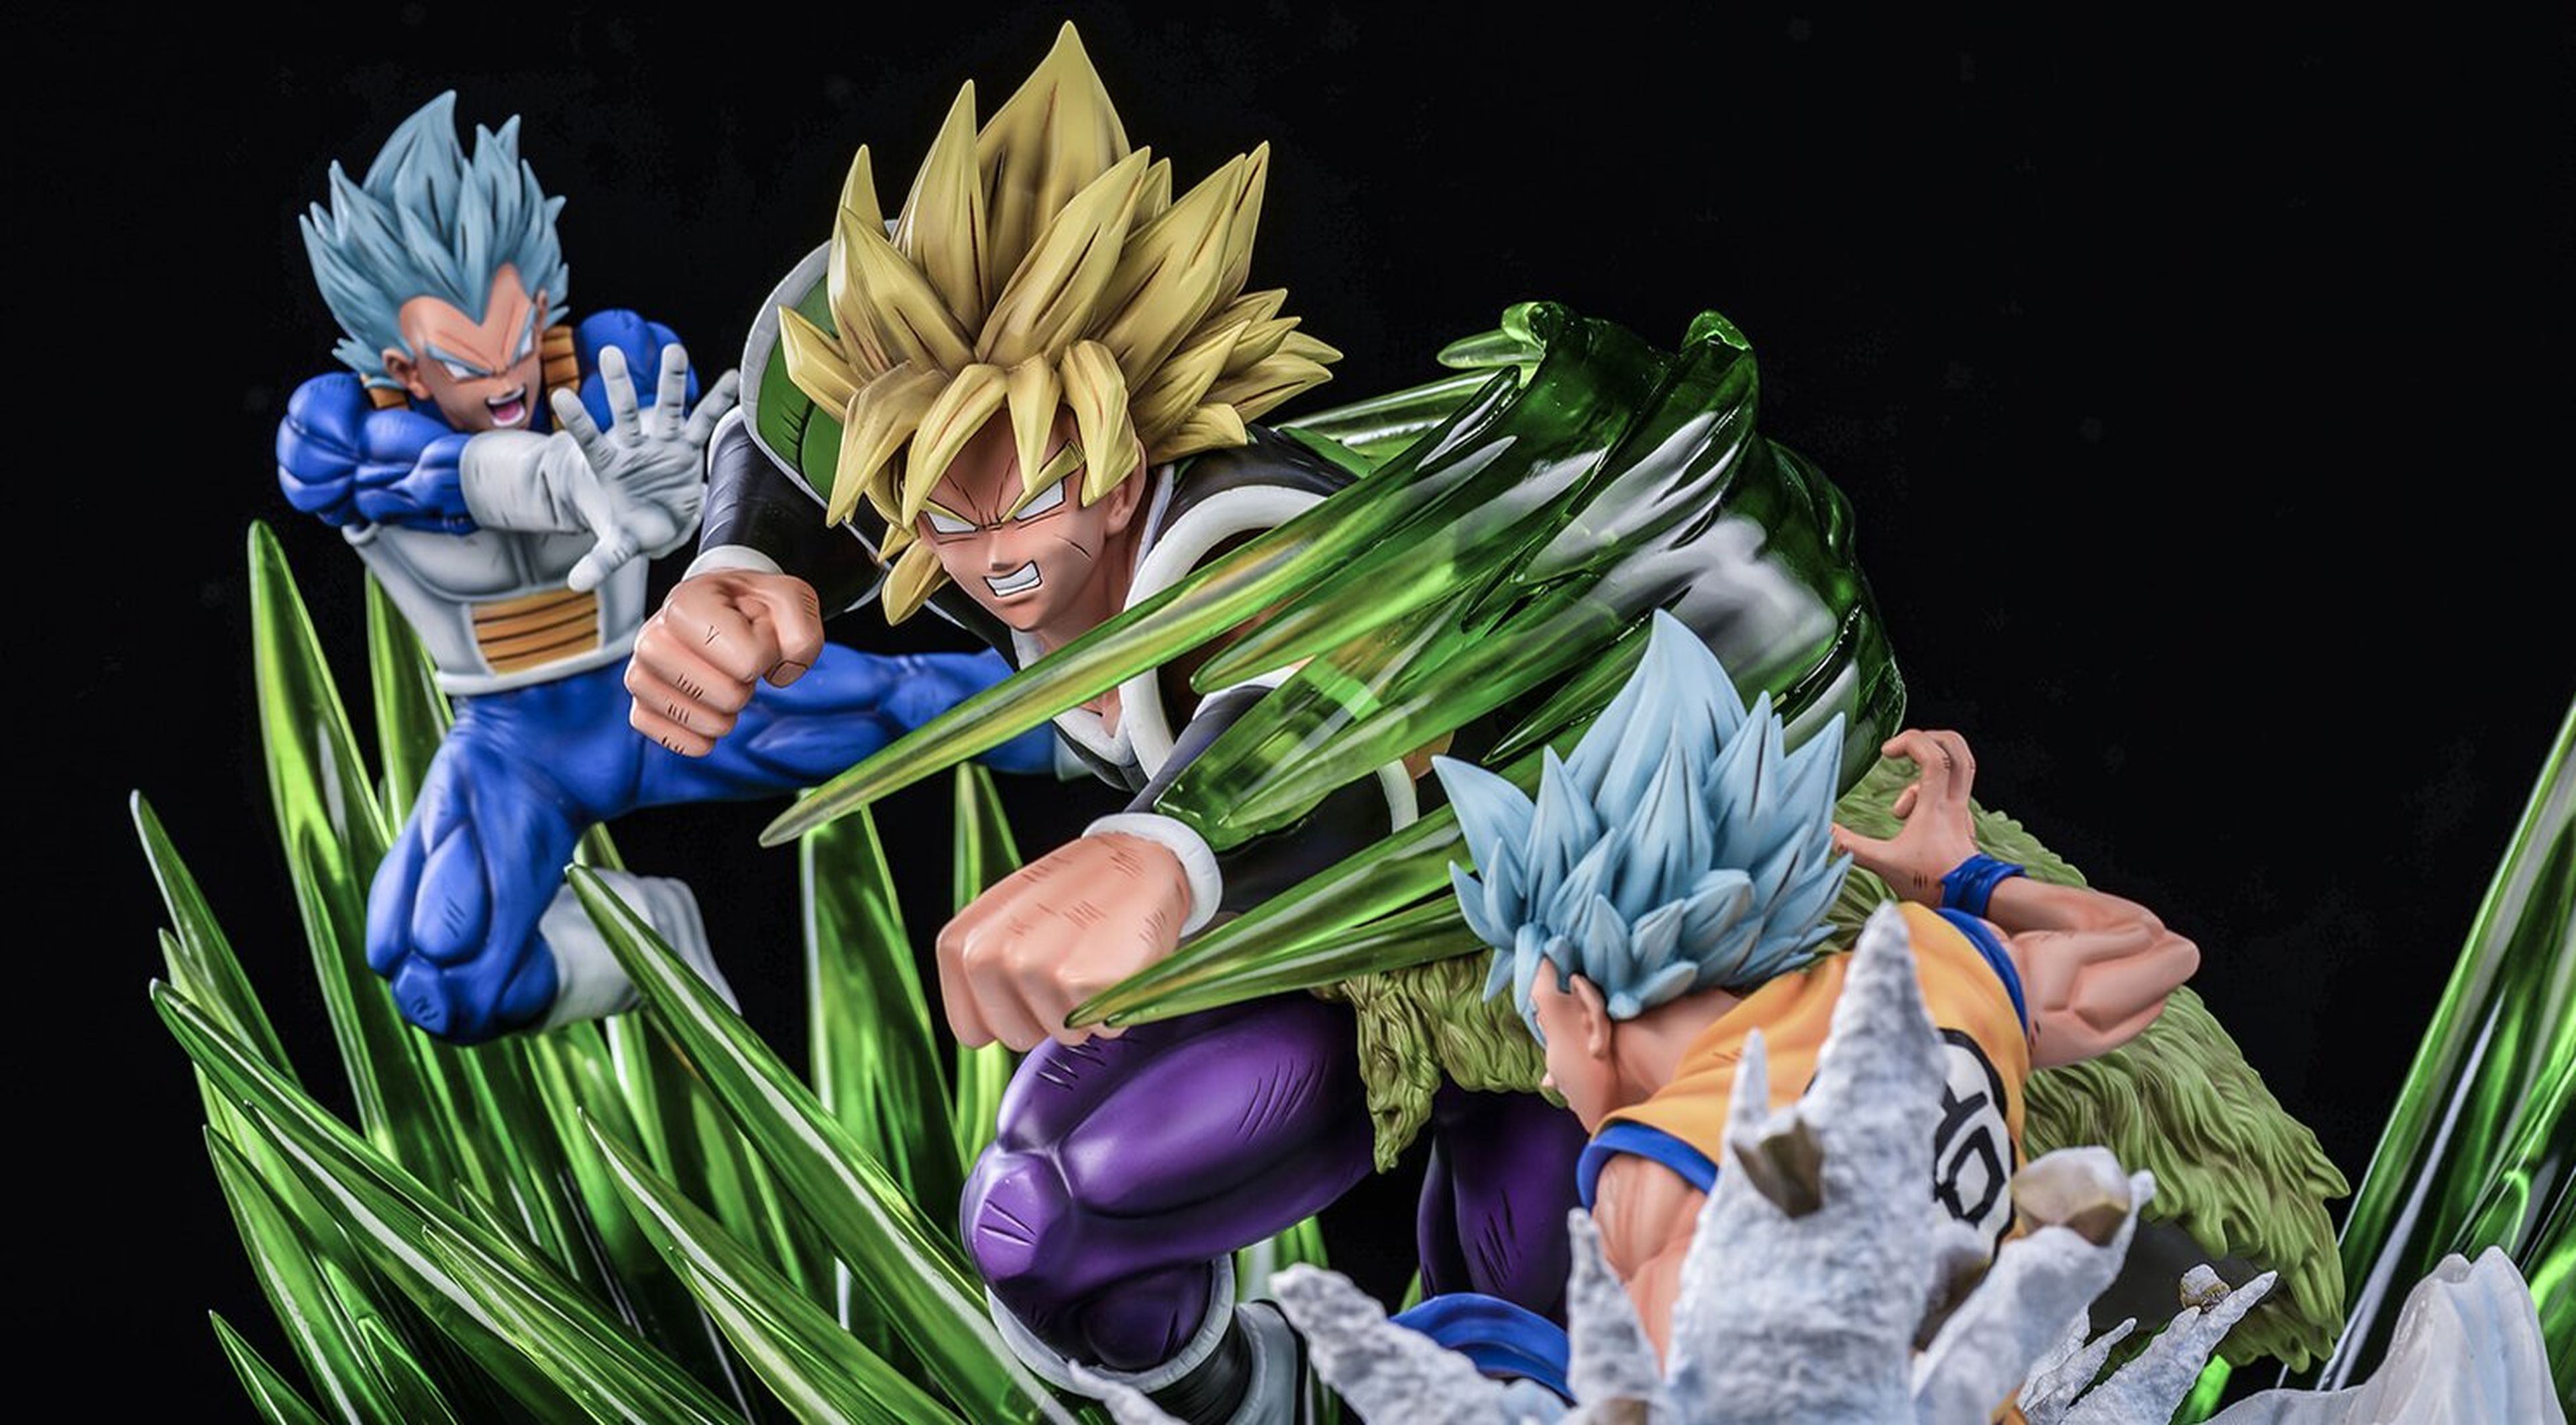 La nueva resina de Goku, Vegeta y Broly es espectacular